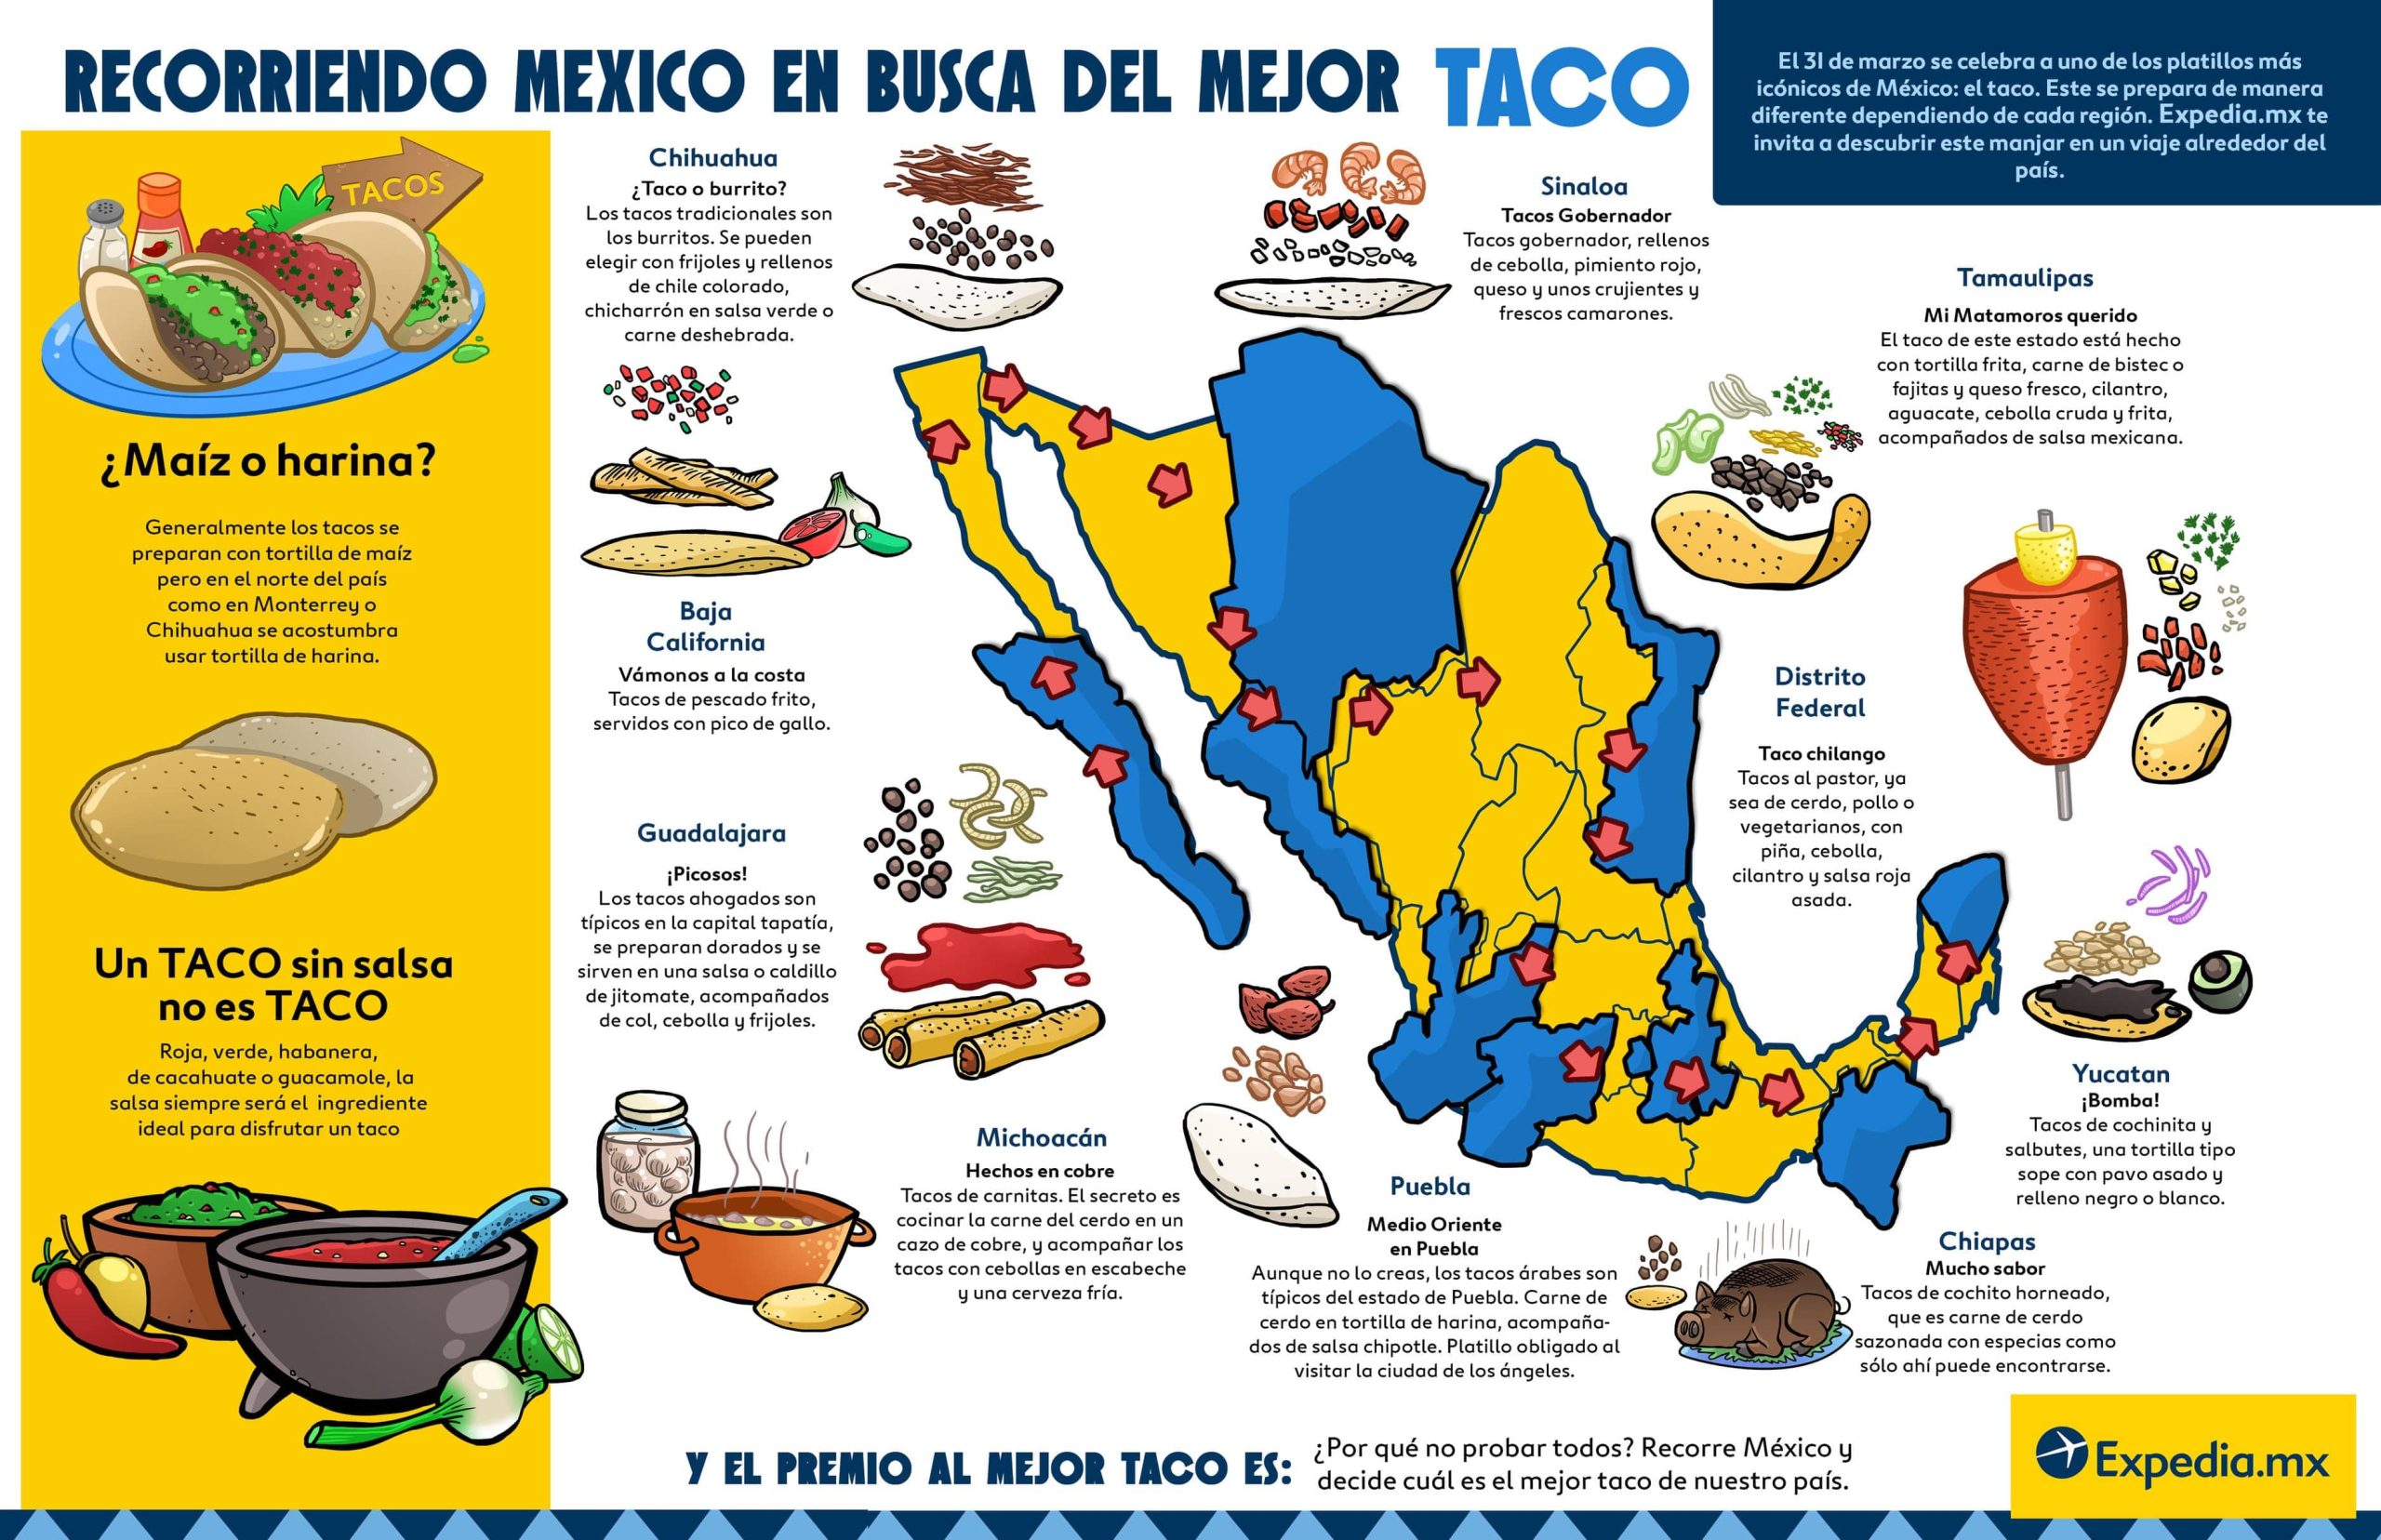 Donde se encuentra el mejor taco de Mexico